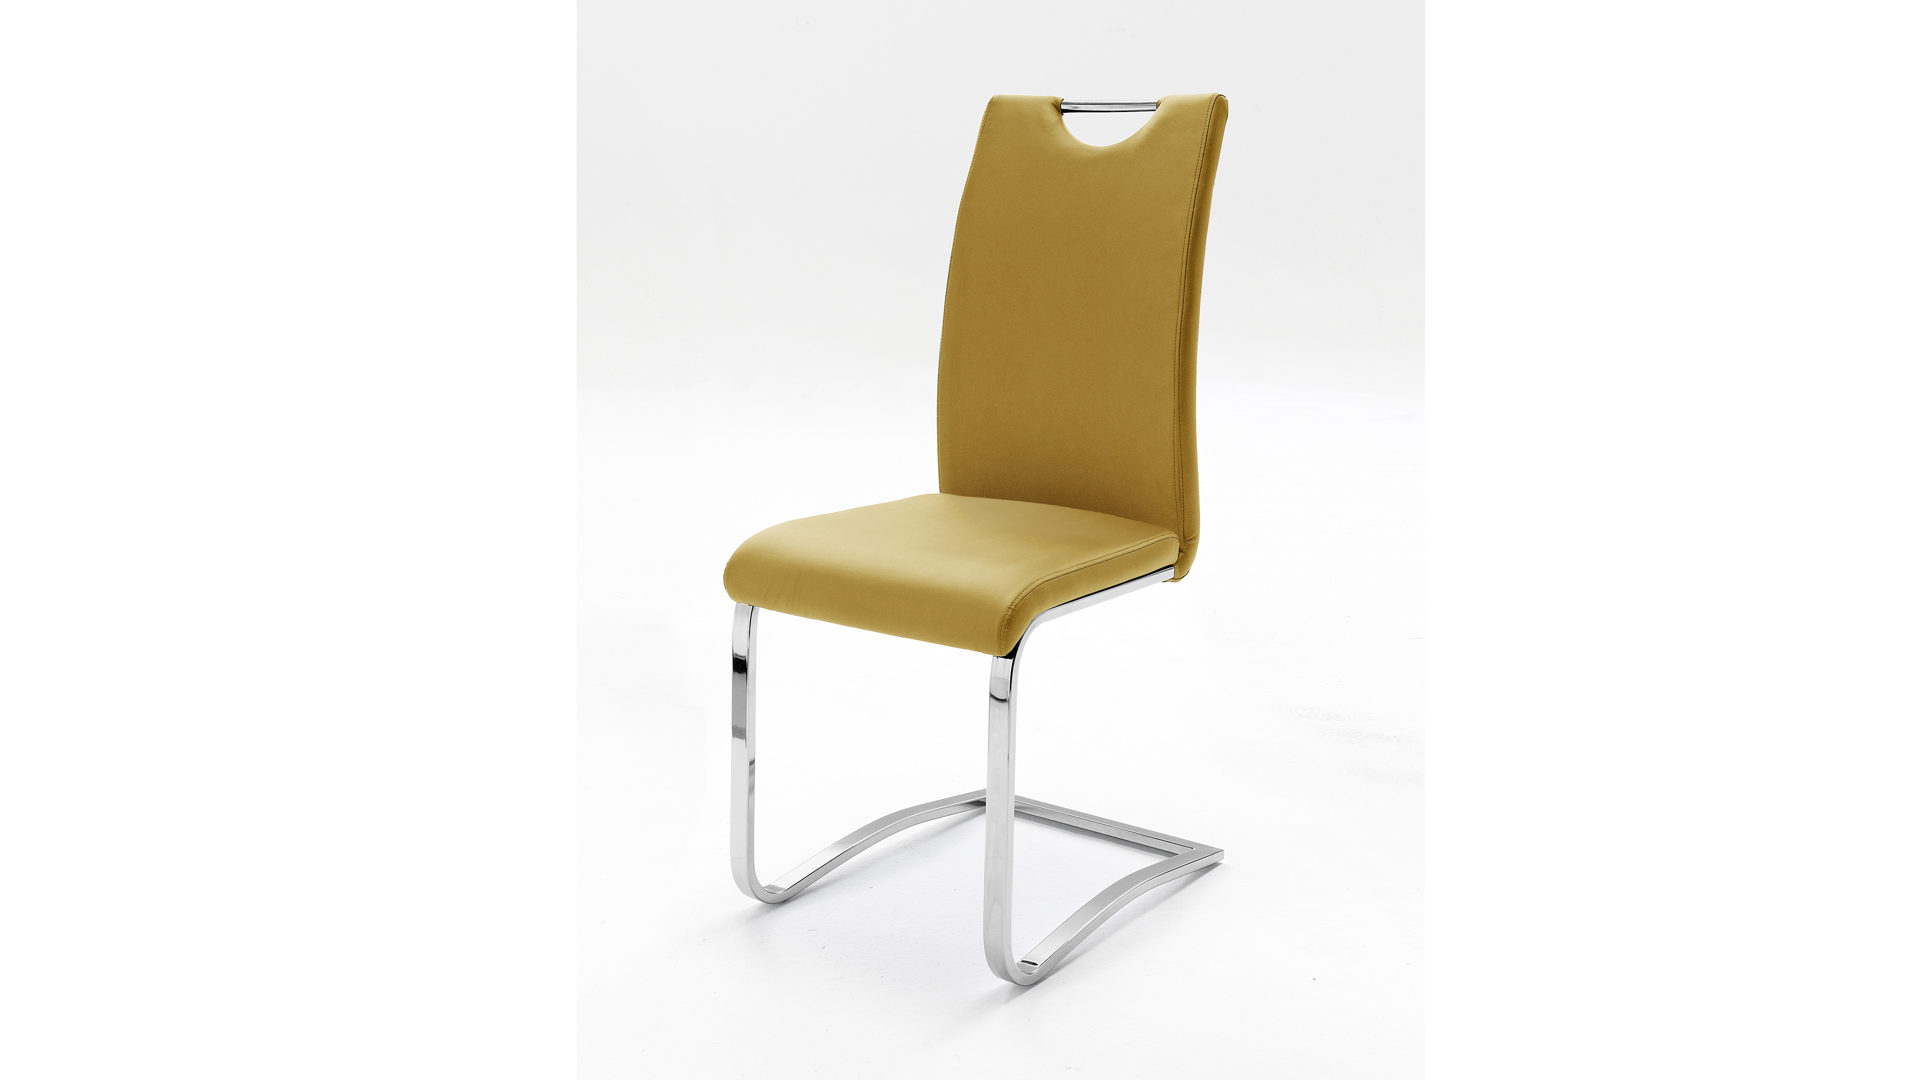 Schwingstuhl Mca furniture aus Stoff in Gelb Schwingstuhl, ein Freischwinger mit gepolstertem Sitzkomfort curryfarbener Kunstlederbezug & verchromtes Gestell